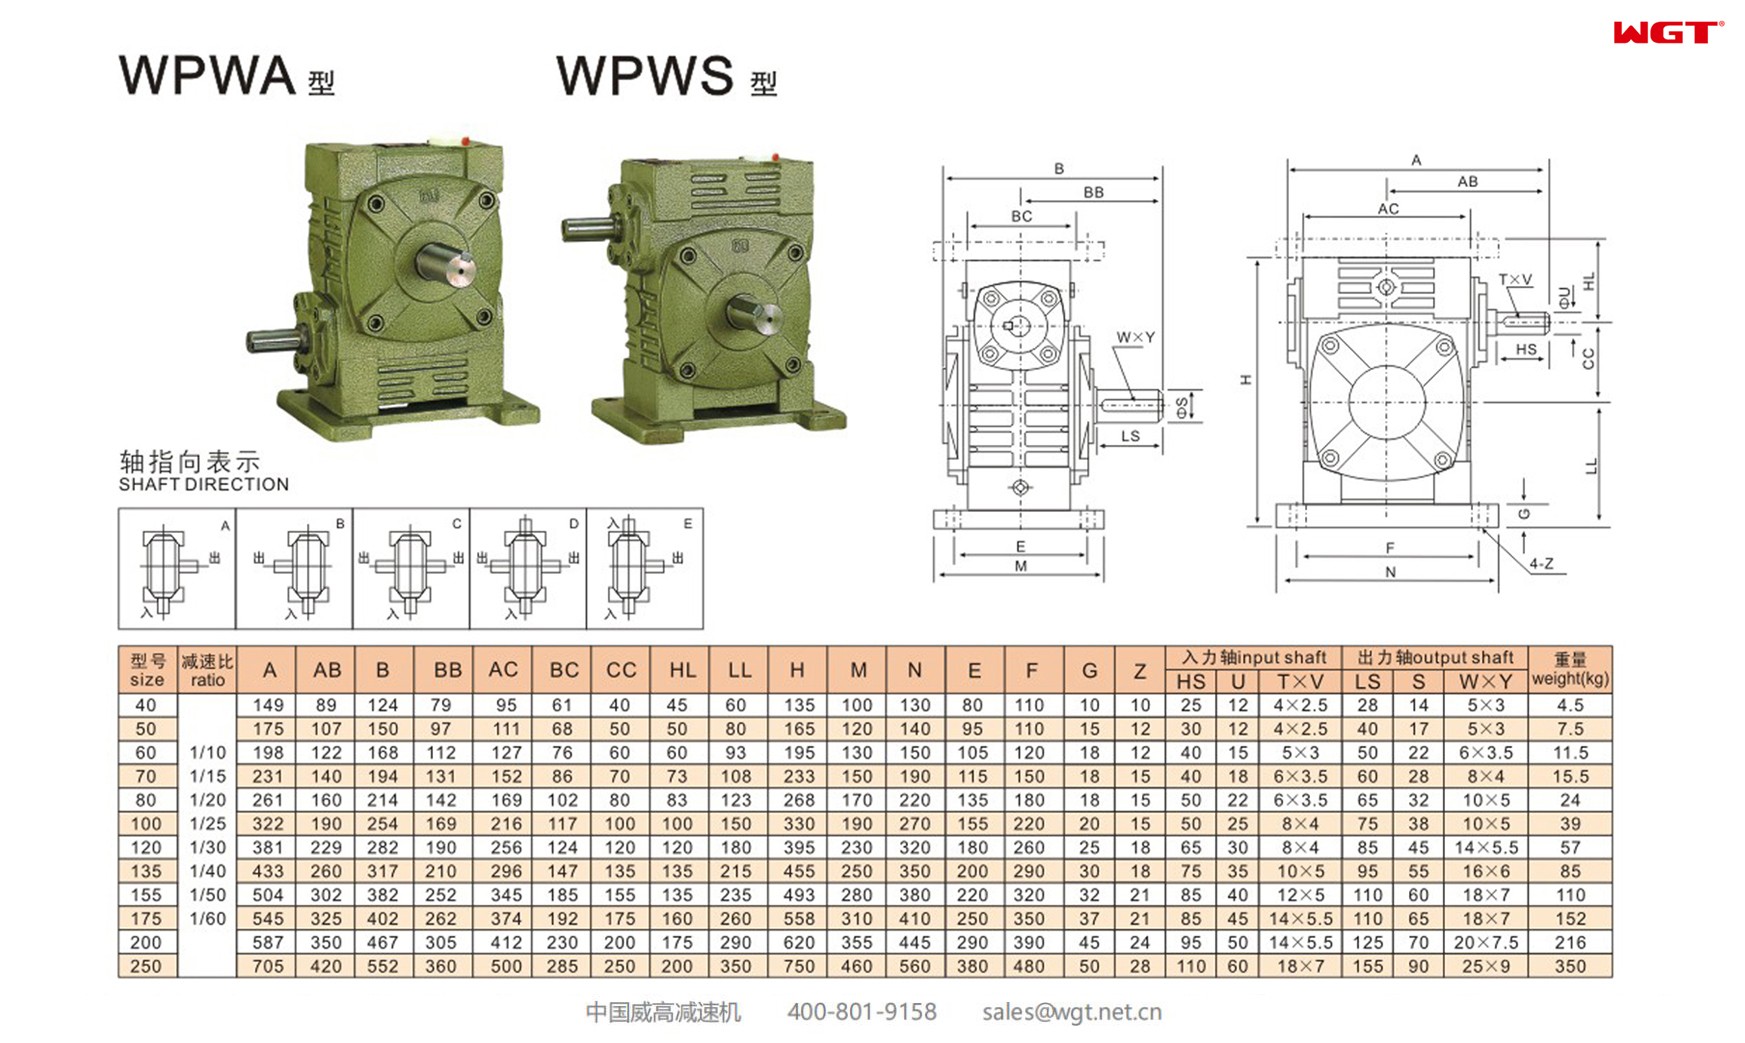 WPWS120 worm gear reducer universal speed reducer 